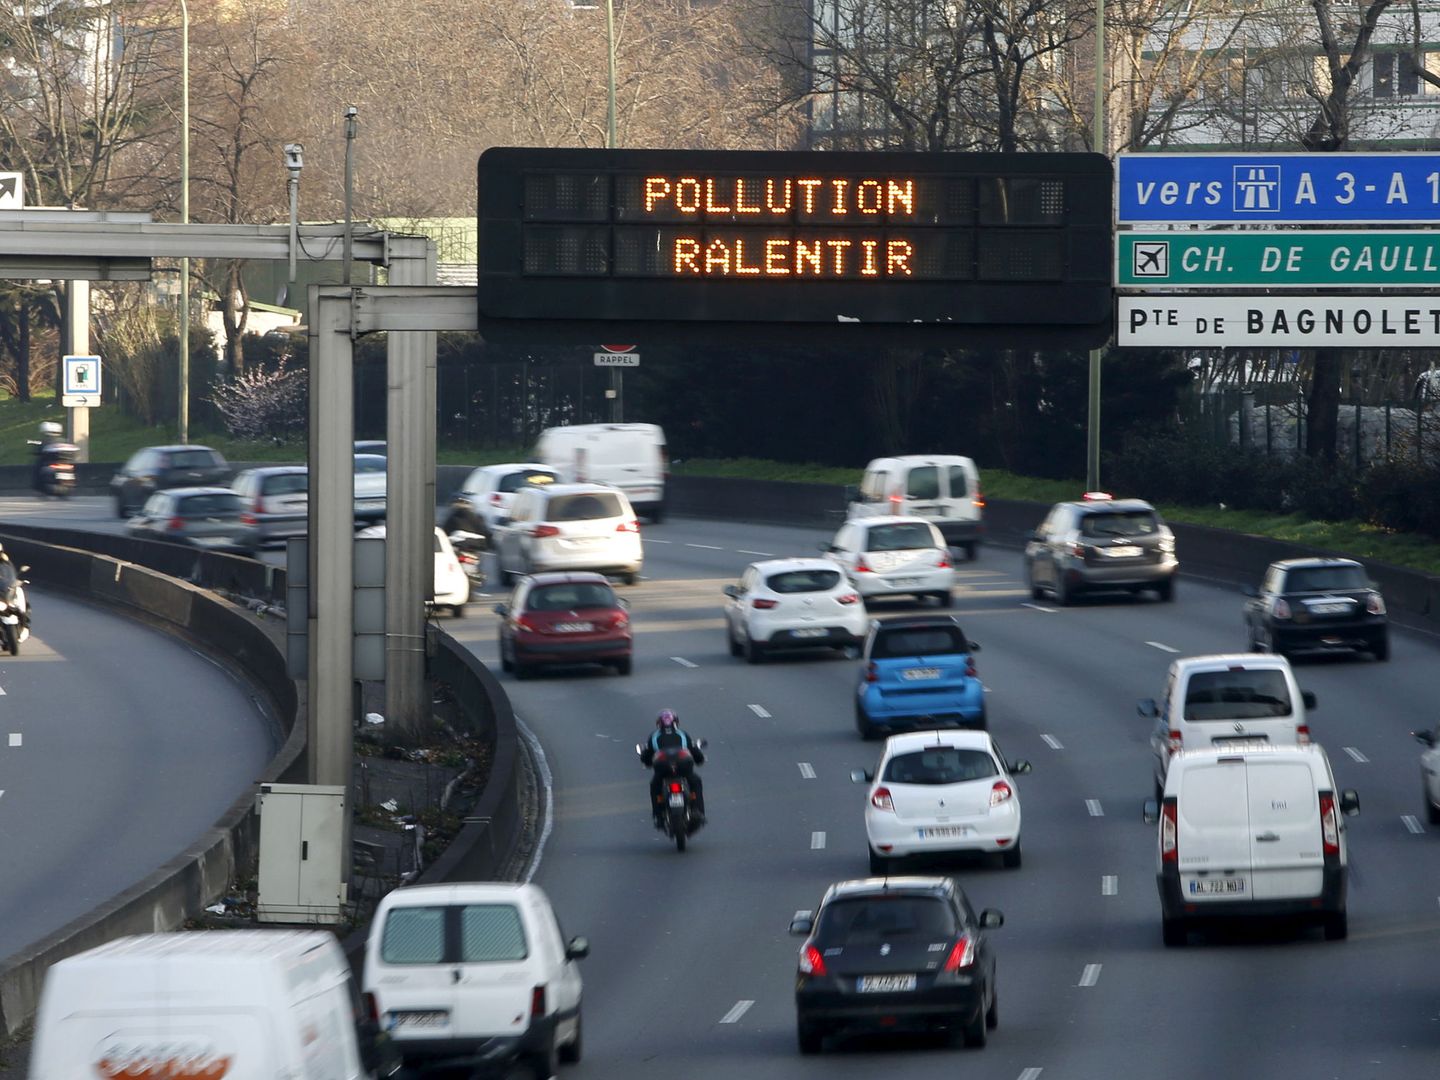 Como muchas ciudades europeas, París tiene un grave problema de contaminación. (Reuters)